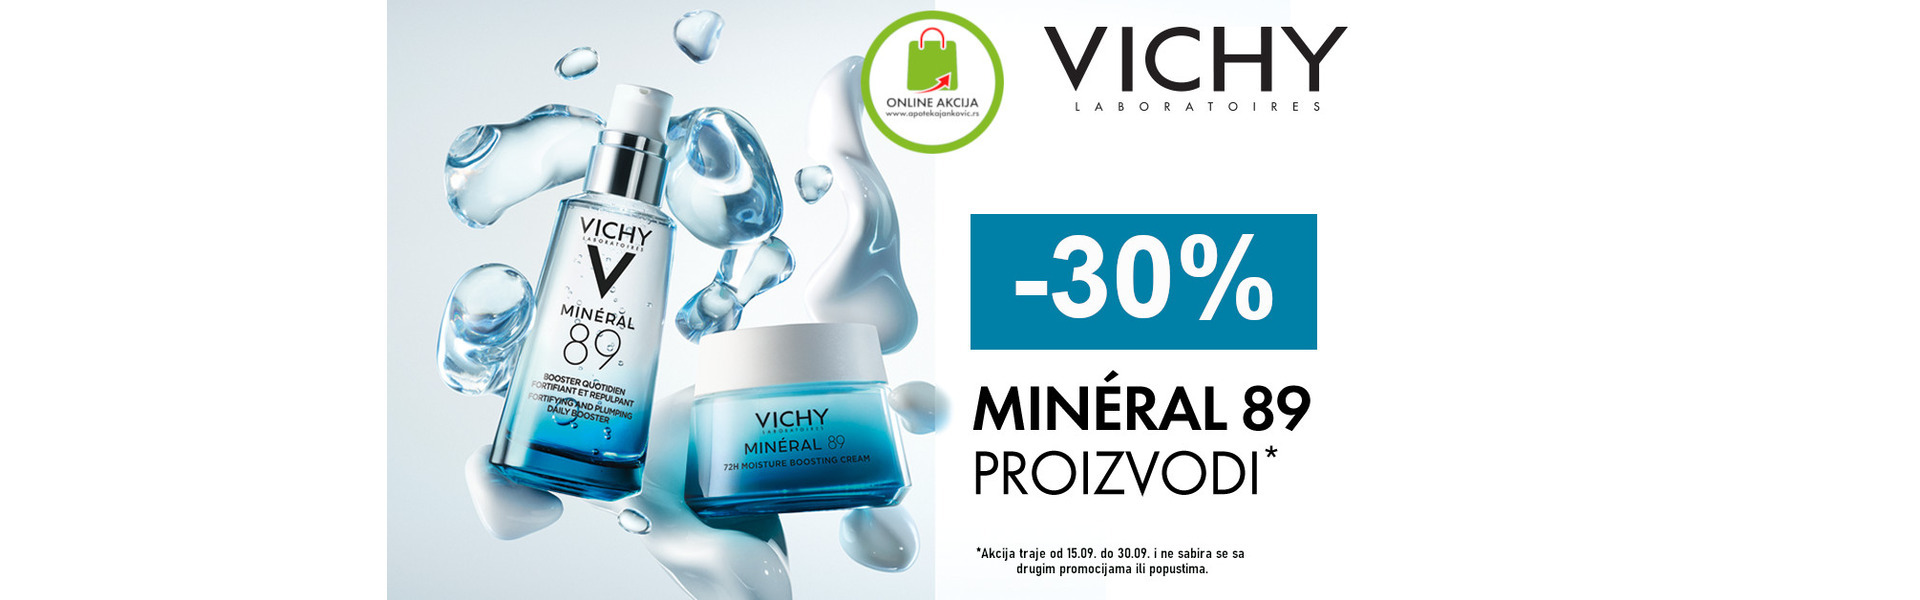 Vichy Mineral 89 Linija 30% POPUST